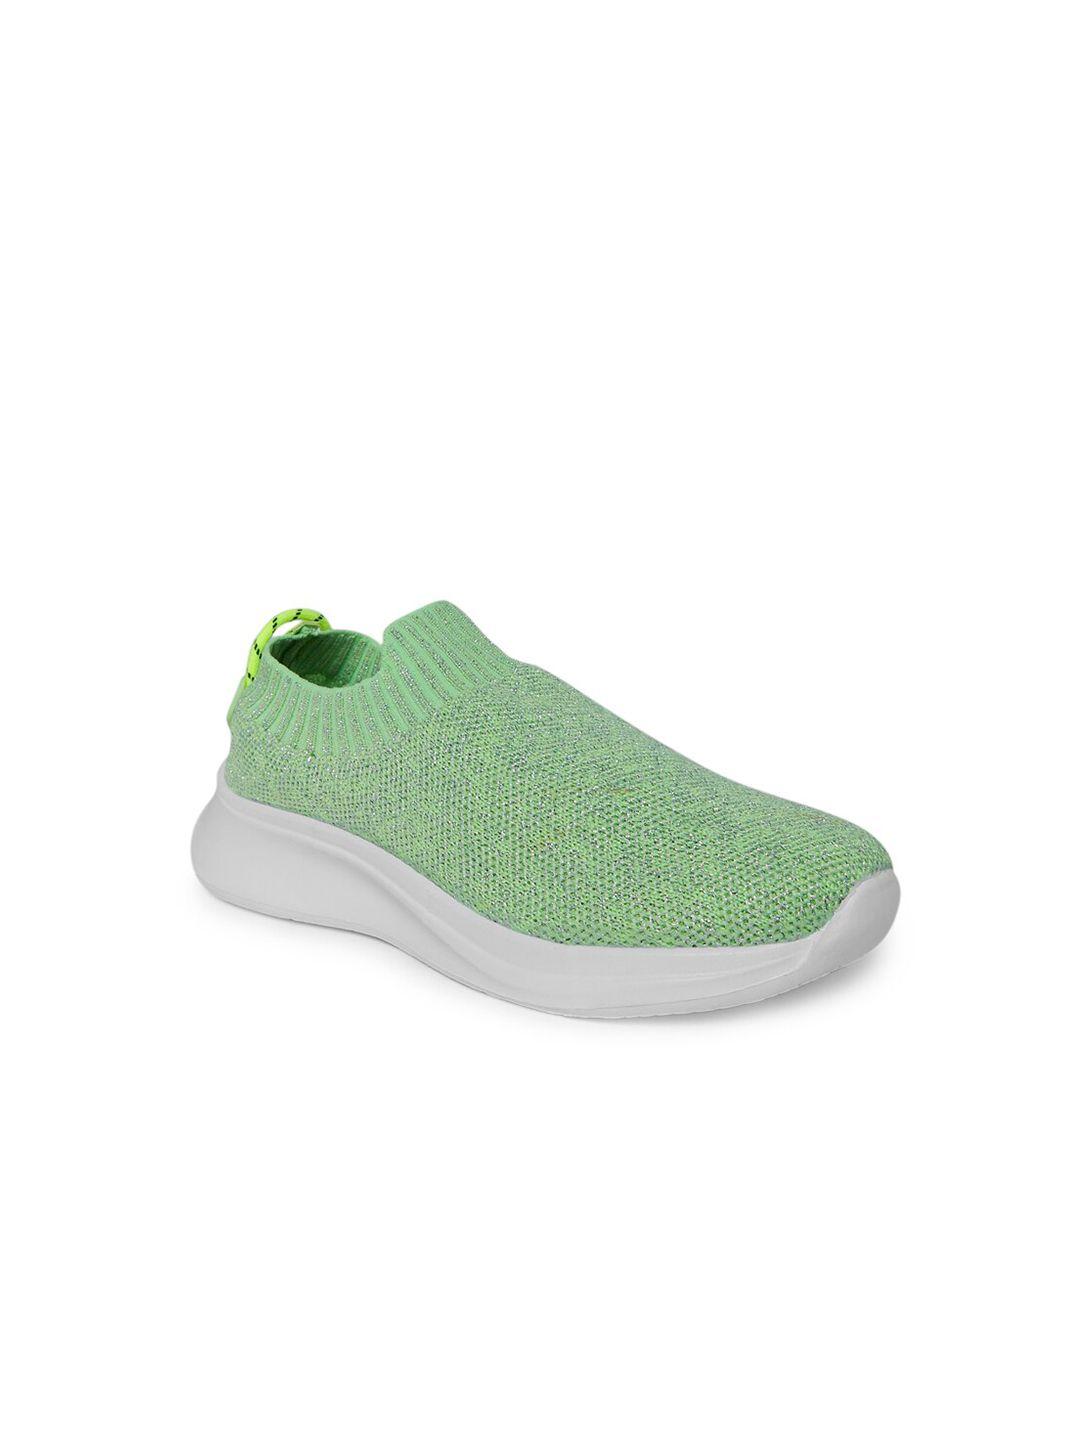 pantaloons-junior-girls-green-textile-walking-non-marking-shoes